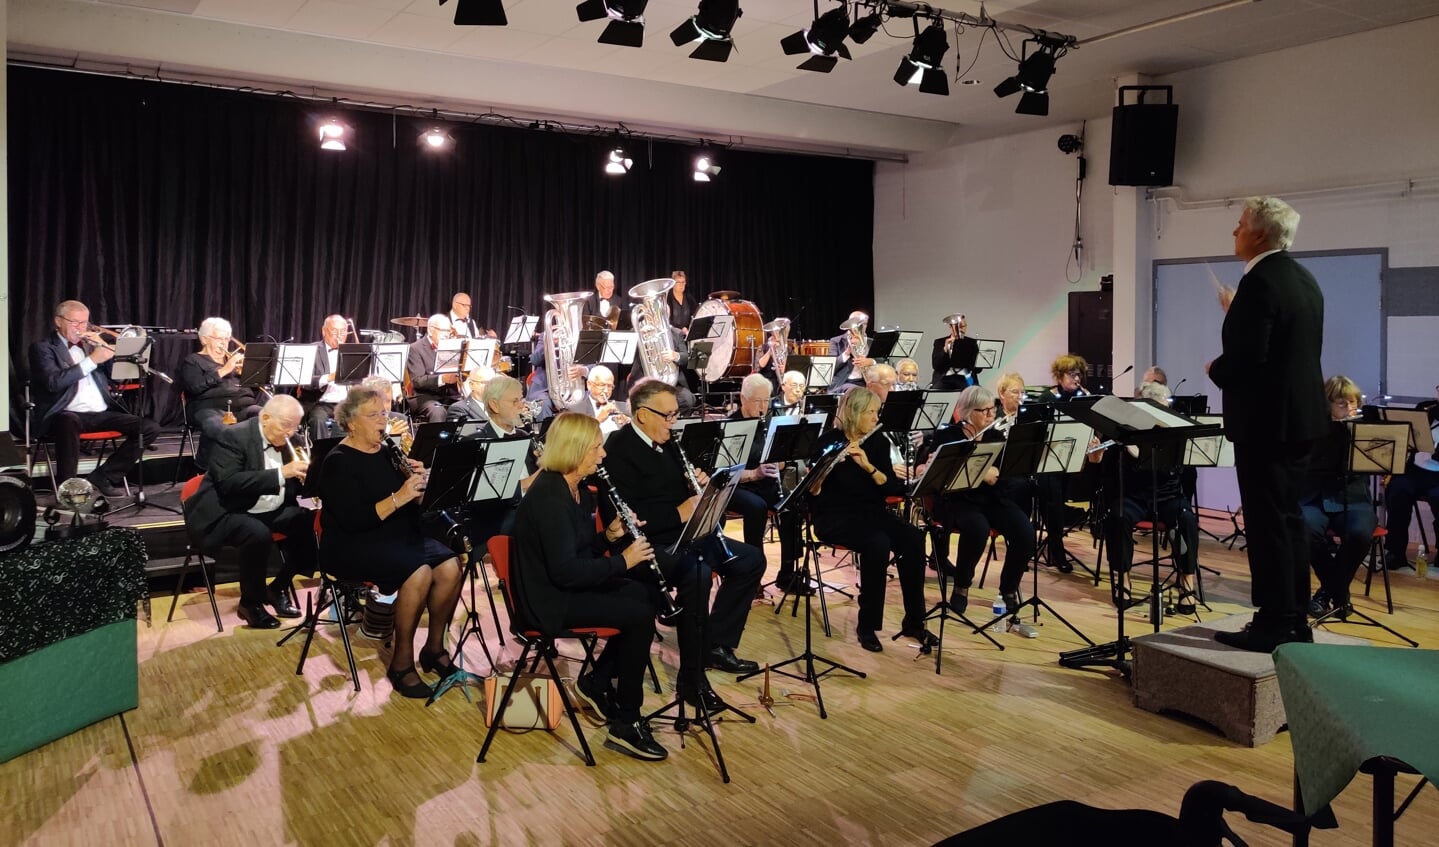 Om 15.00 uur verzorgde het Senioren Harmonie Orkest Provincie Utrecht (Shopu) en warm en betrokken mini-concert. 